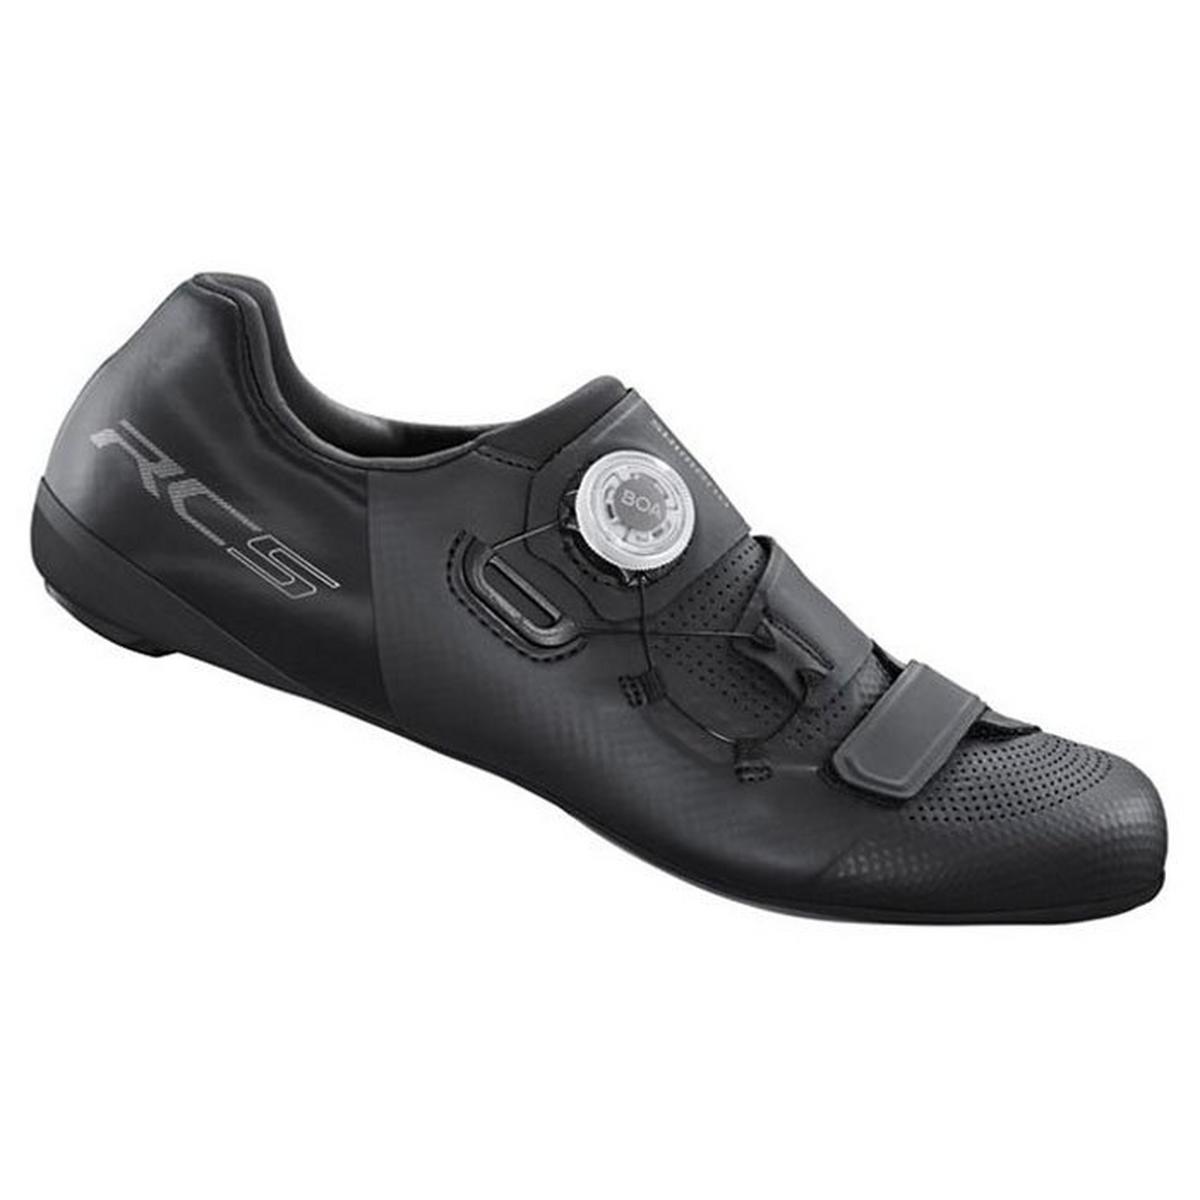 Chaussures de cyclisme RC502 unisexes